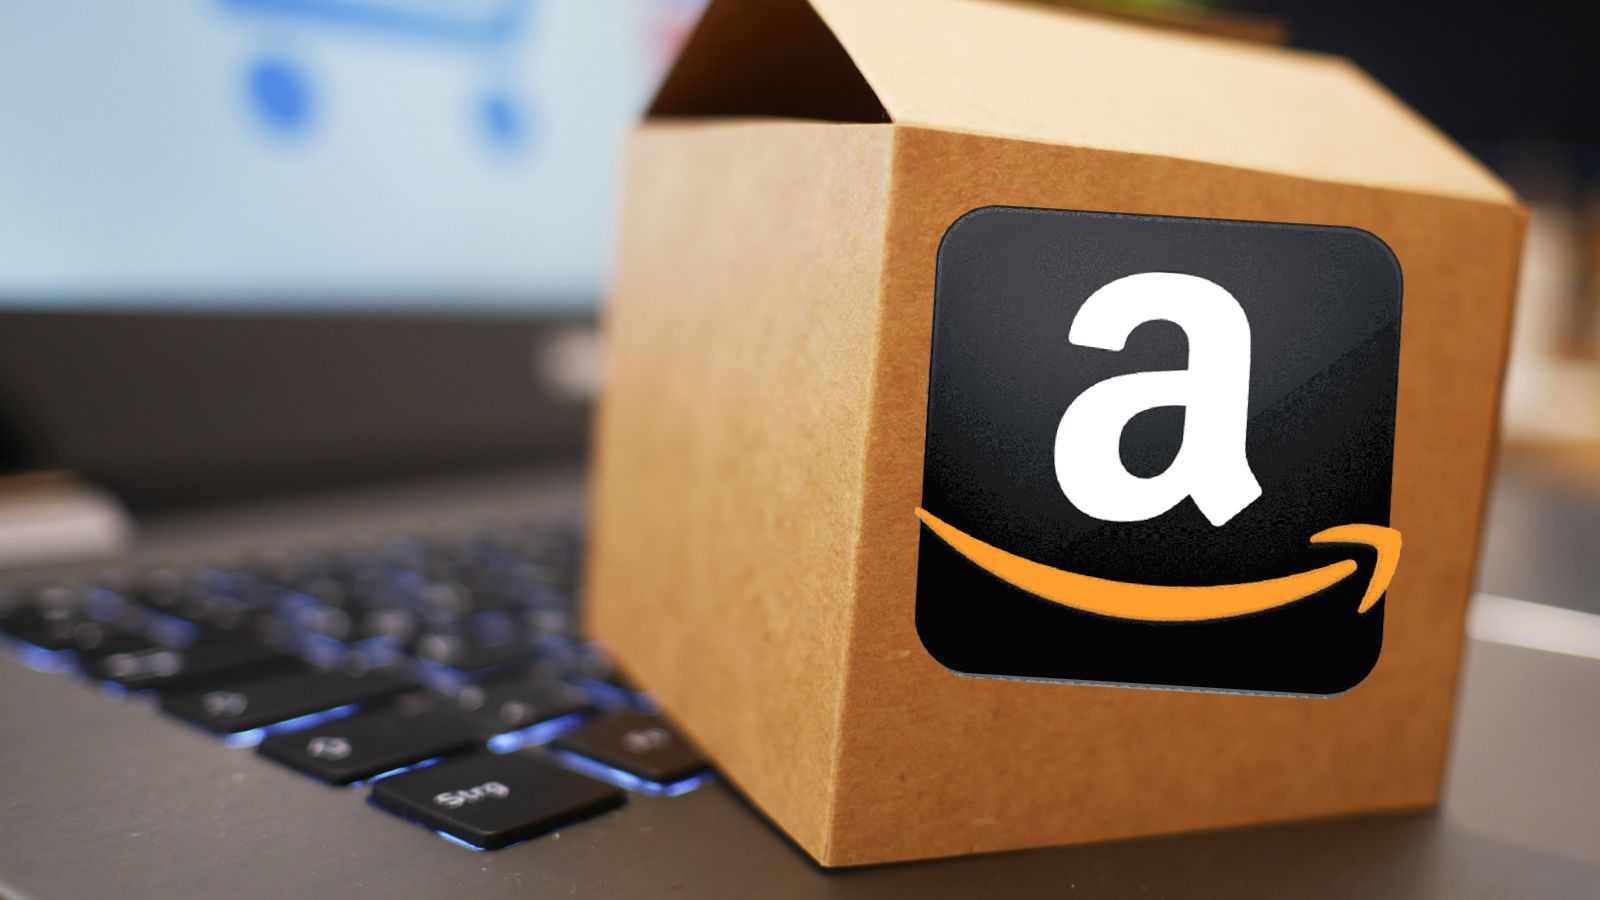 Amazon SPAVENTOSA con offerte PRIME gratis e sconti dell'80%